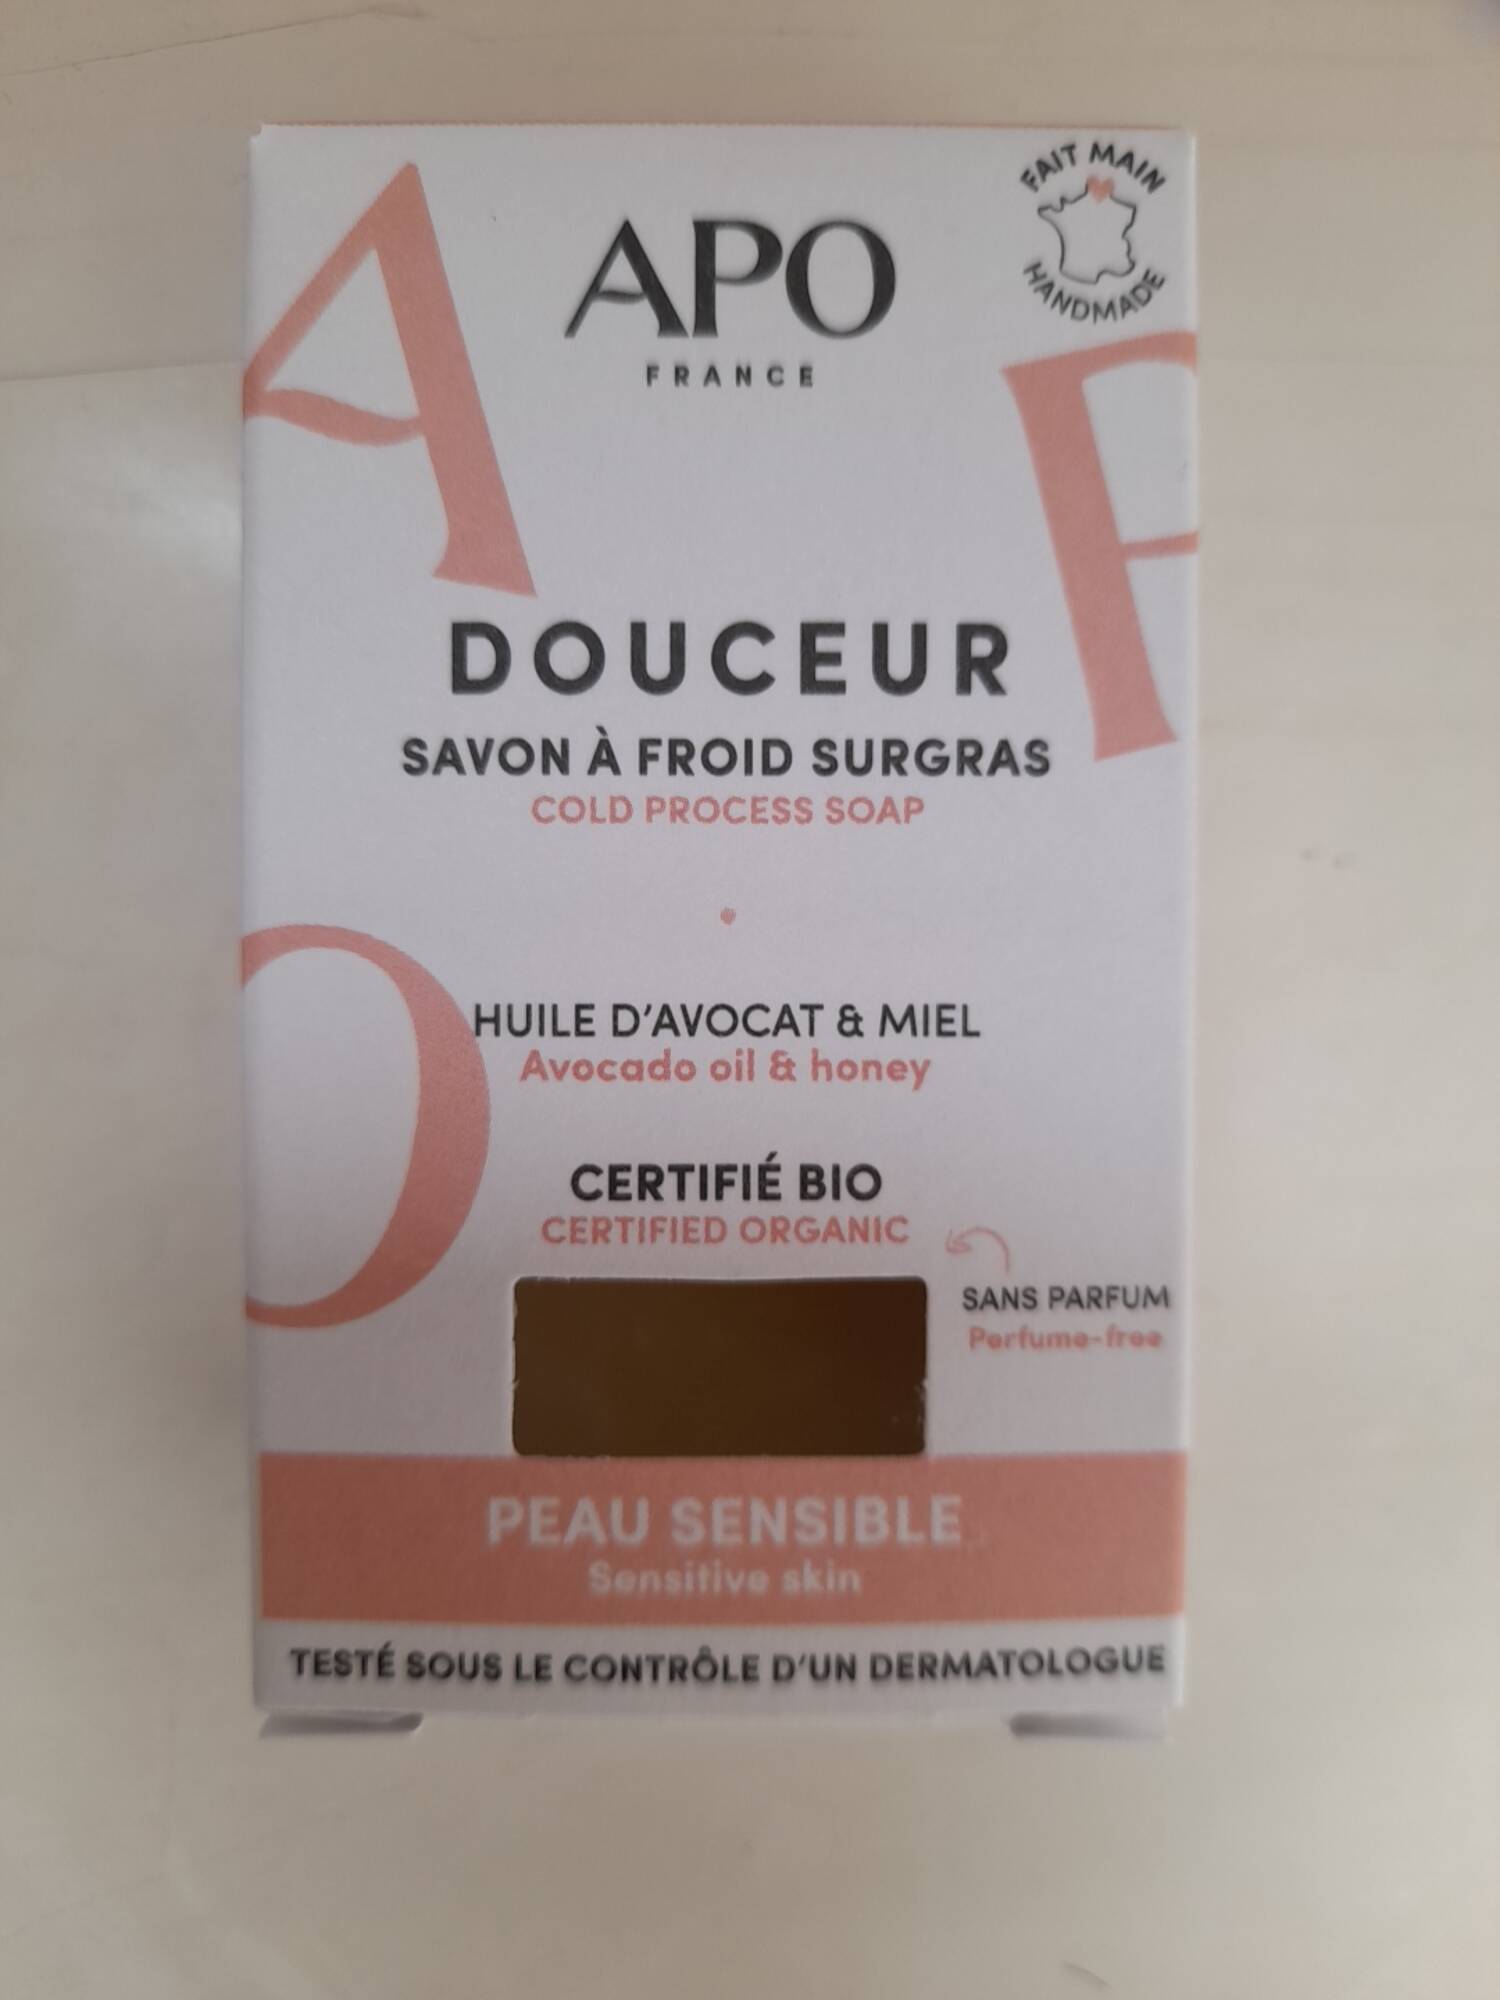 APO FRANCE - Savon à froid surgras au huile d'avocat & miel